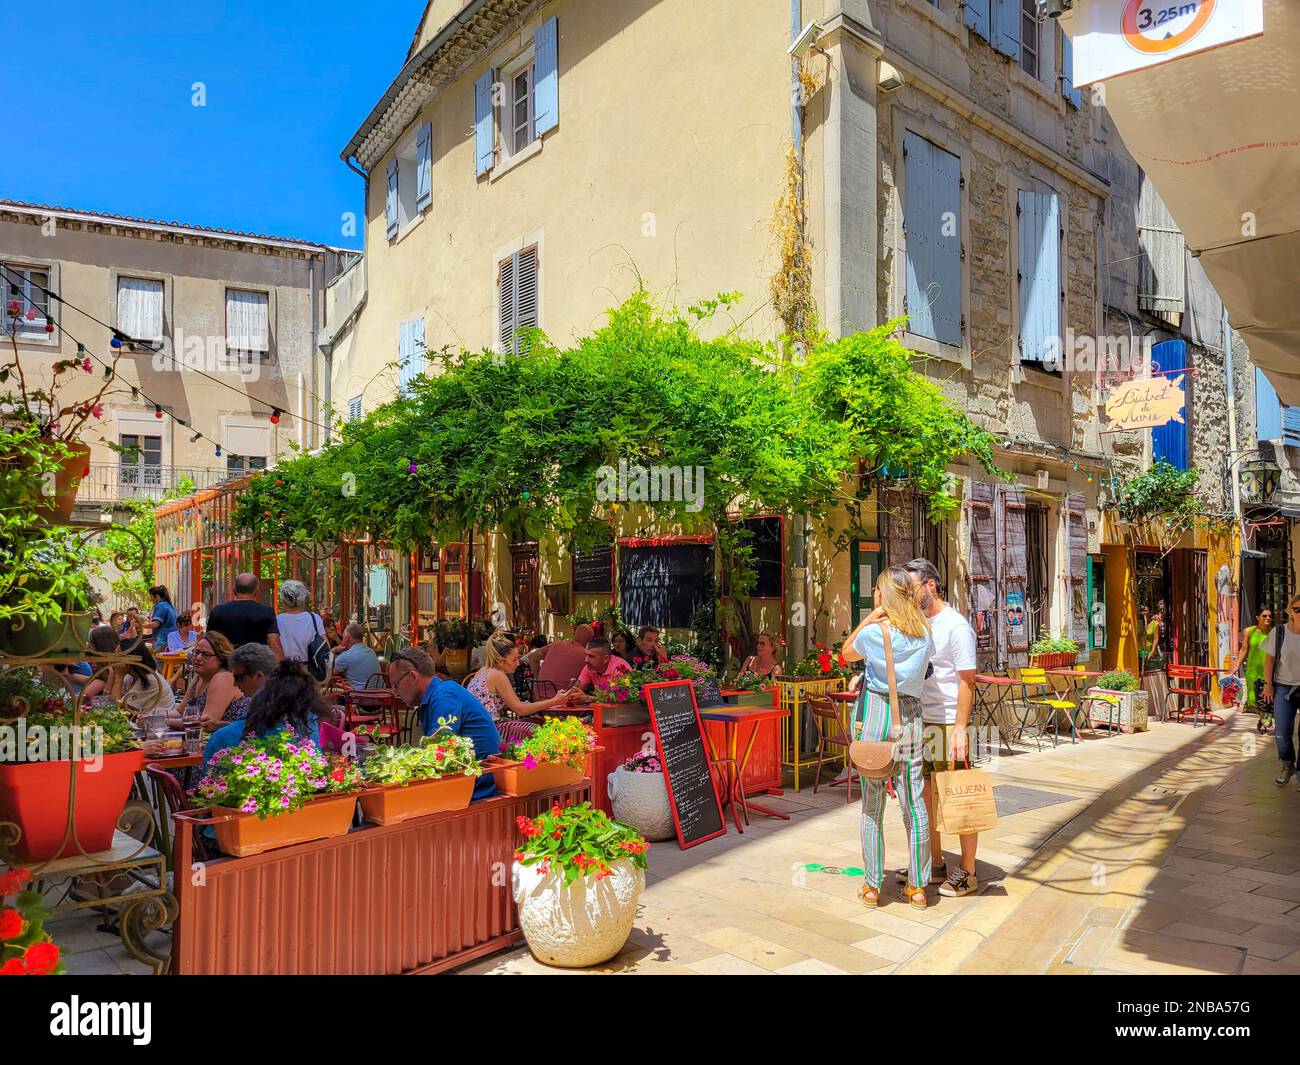 Un colorido callejón de tiendas y cafés en el centro histórico medieval de Saint-Rémy de Provence. Foto de stock